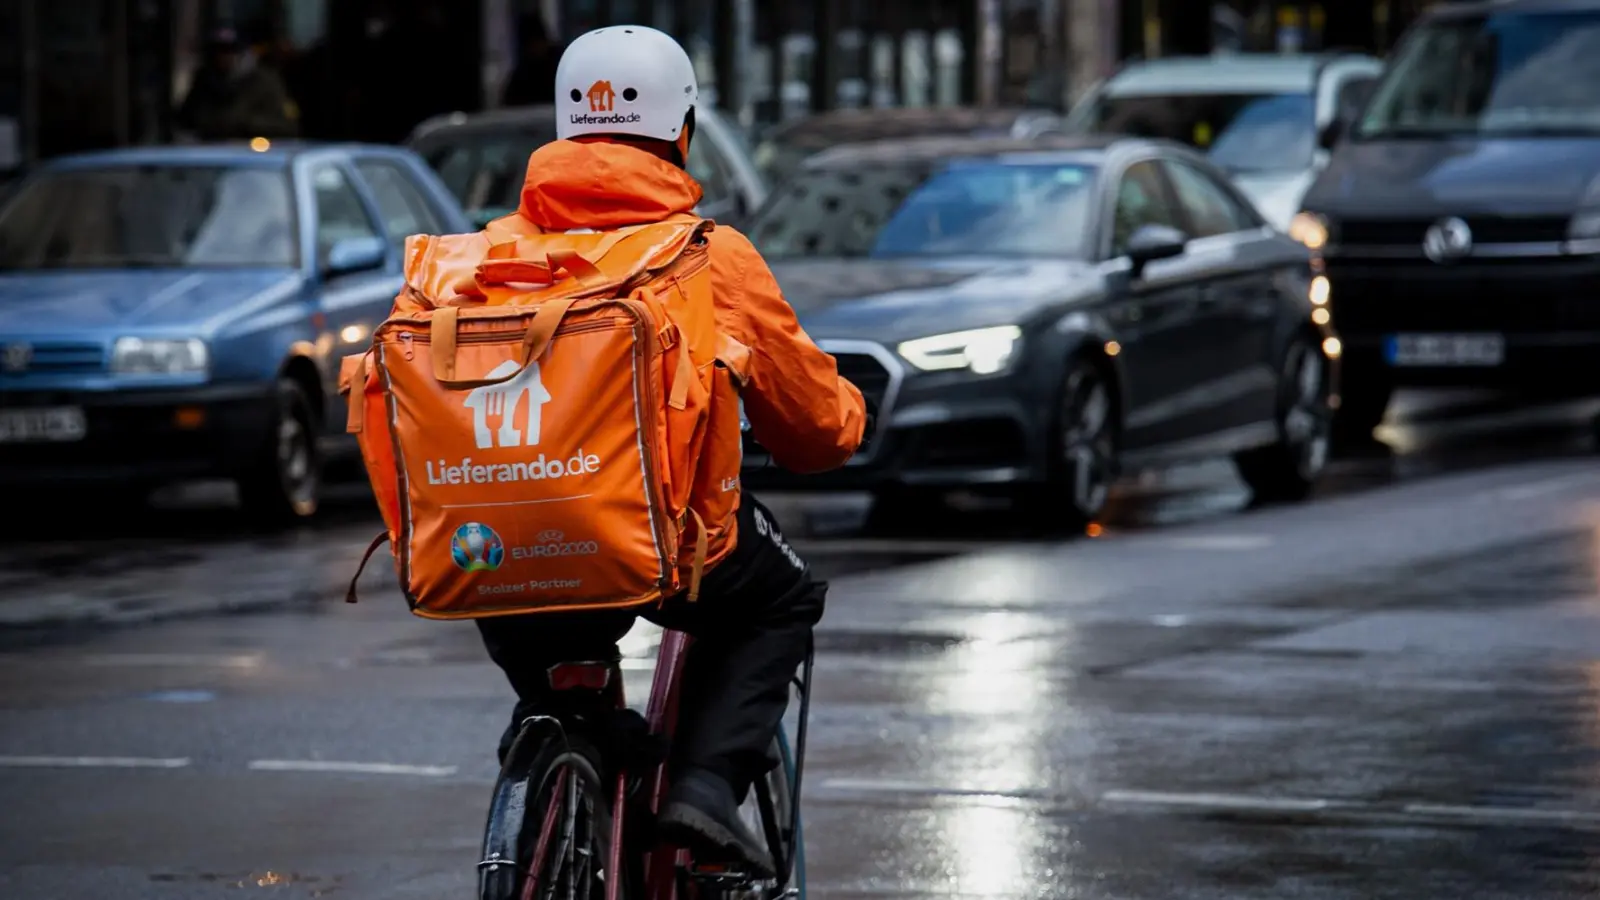 Bei Wind und Wetter unterwegs: Fahrrad-Kuriere bei Lieferando arbeiten zu niedrigen Löhnen und unter hoher Belastung, kritisiert die Gewerkschaft NGG. (Foto: NGG)